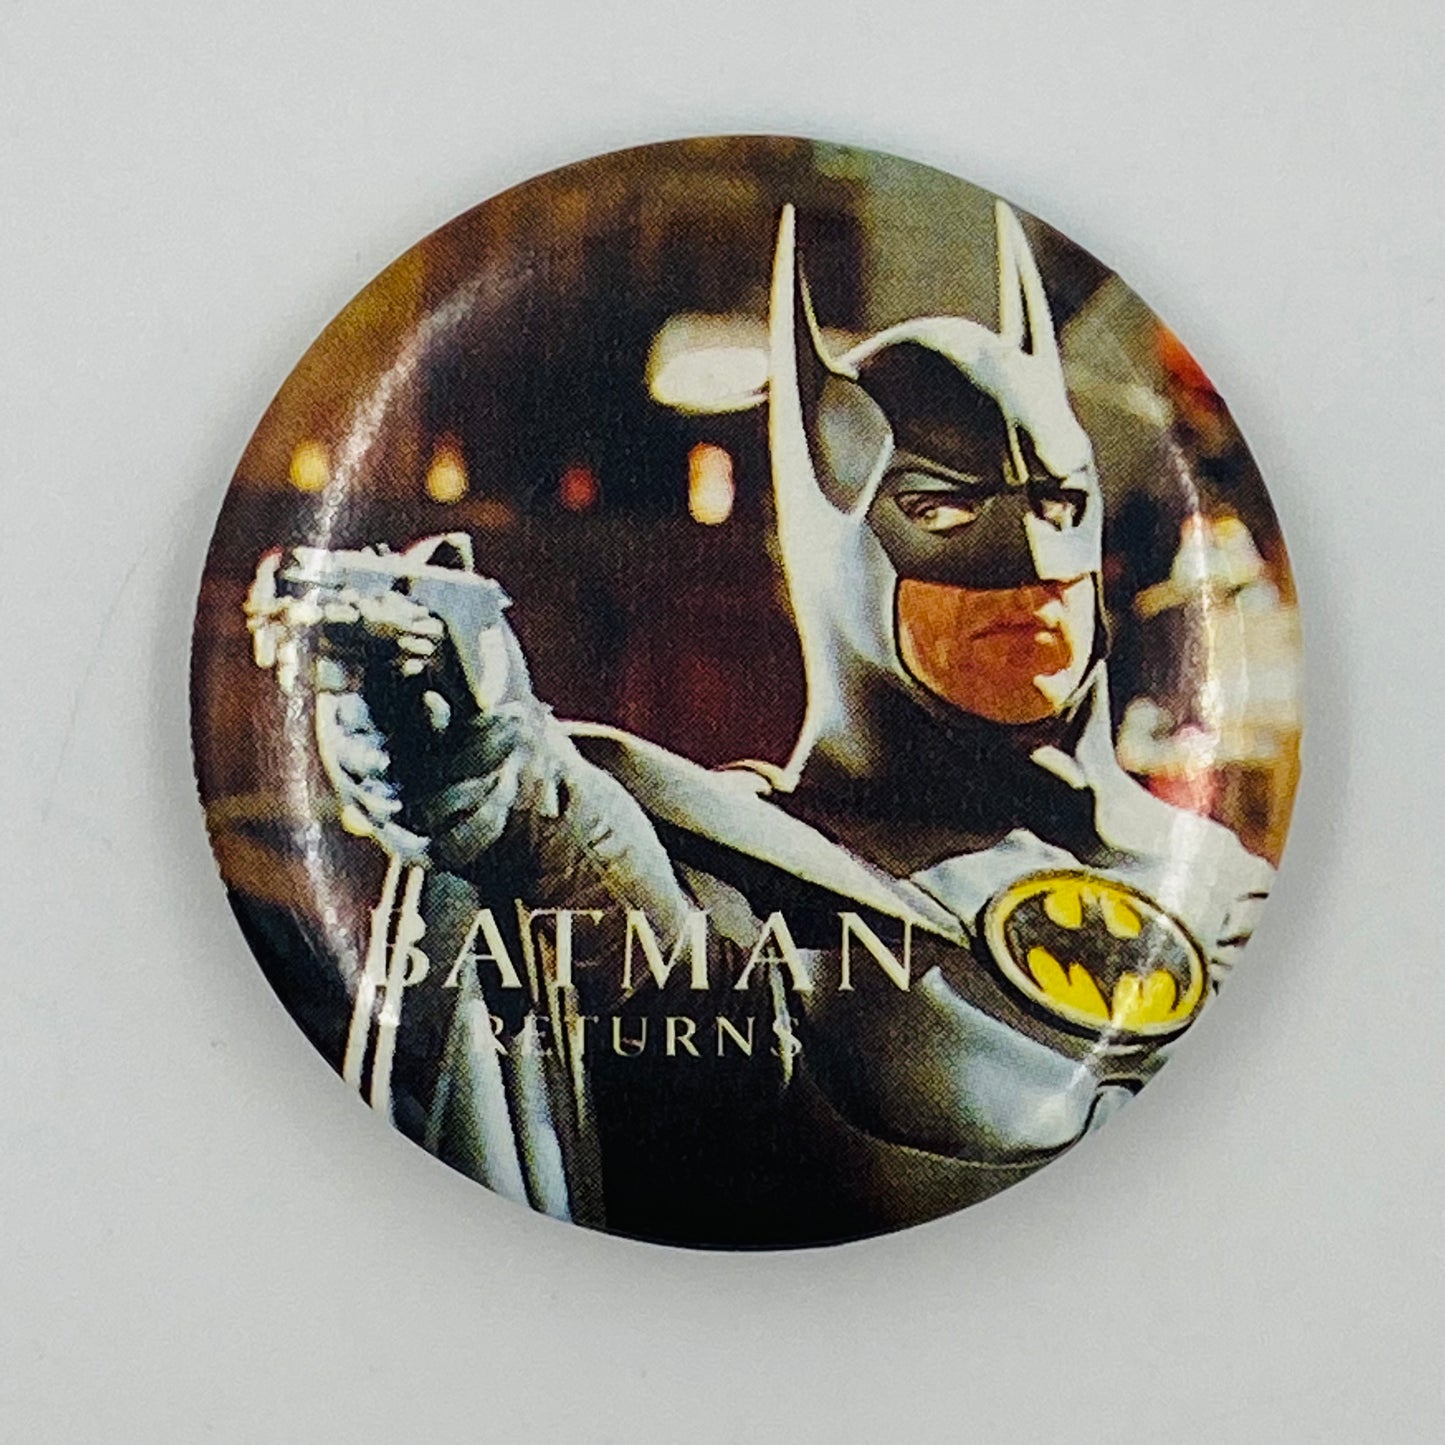 Batman Returns Grappling Gun pinback button (1992)